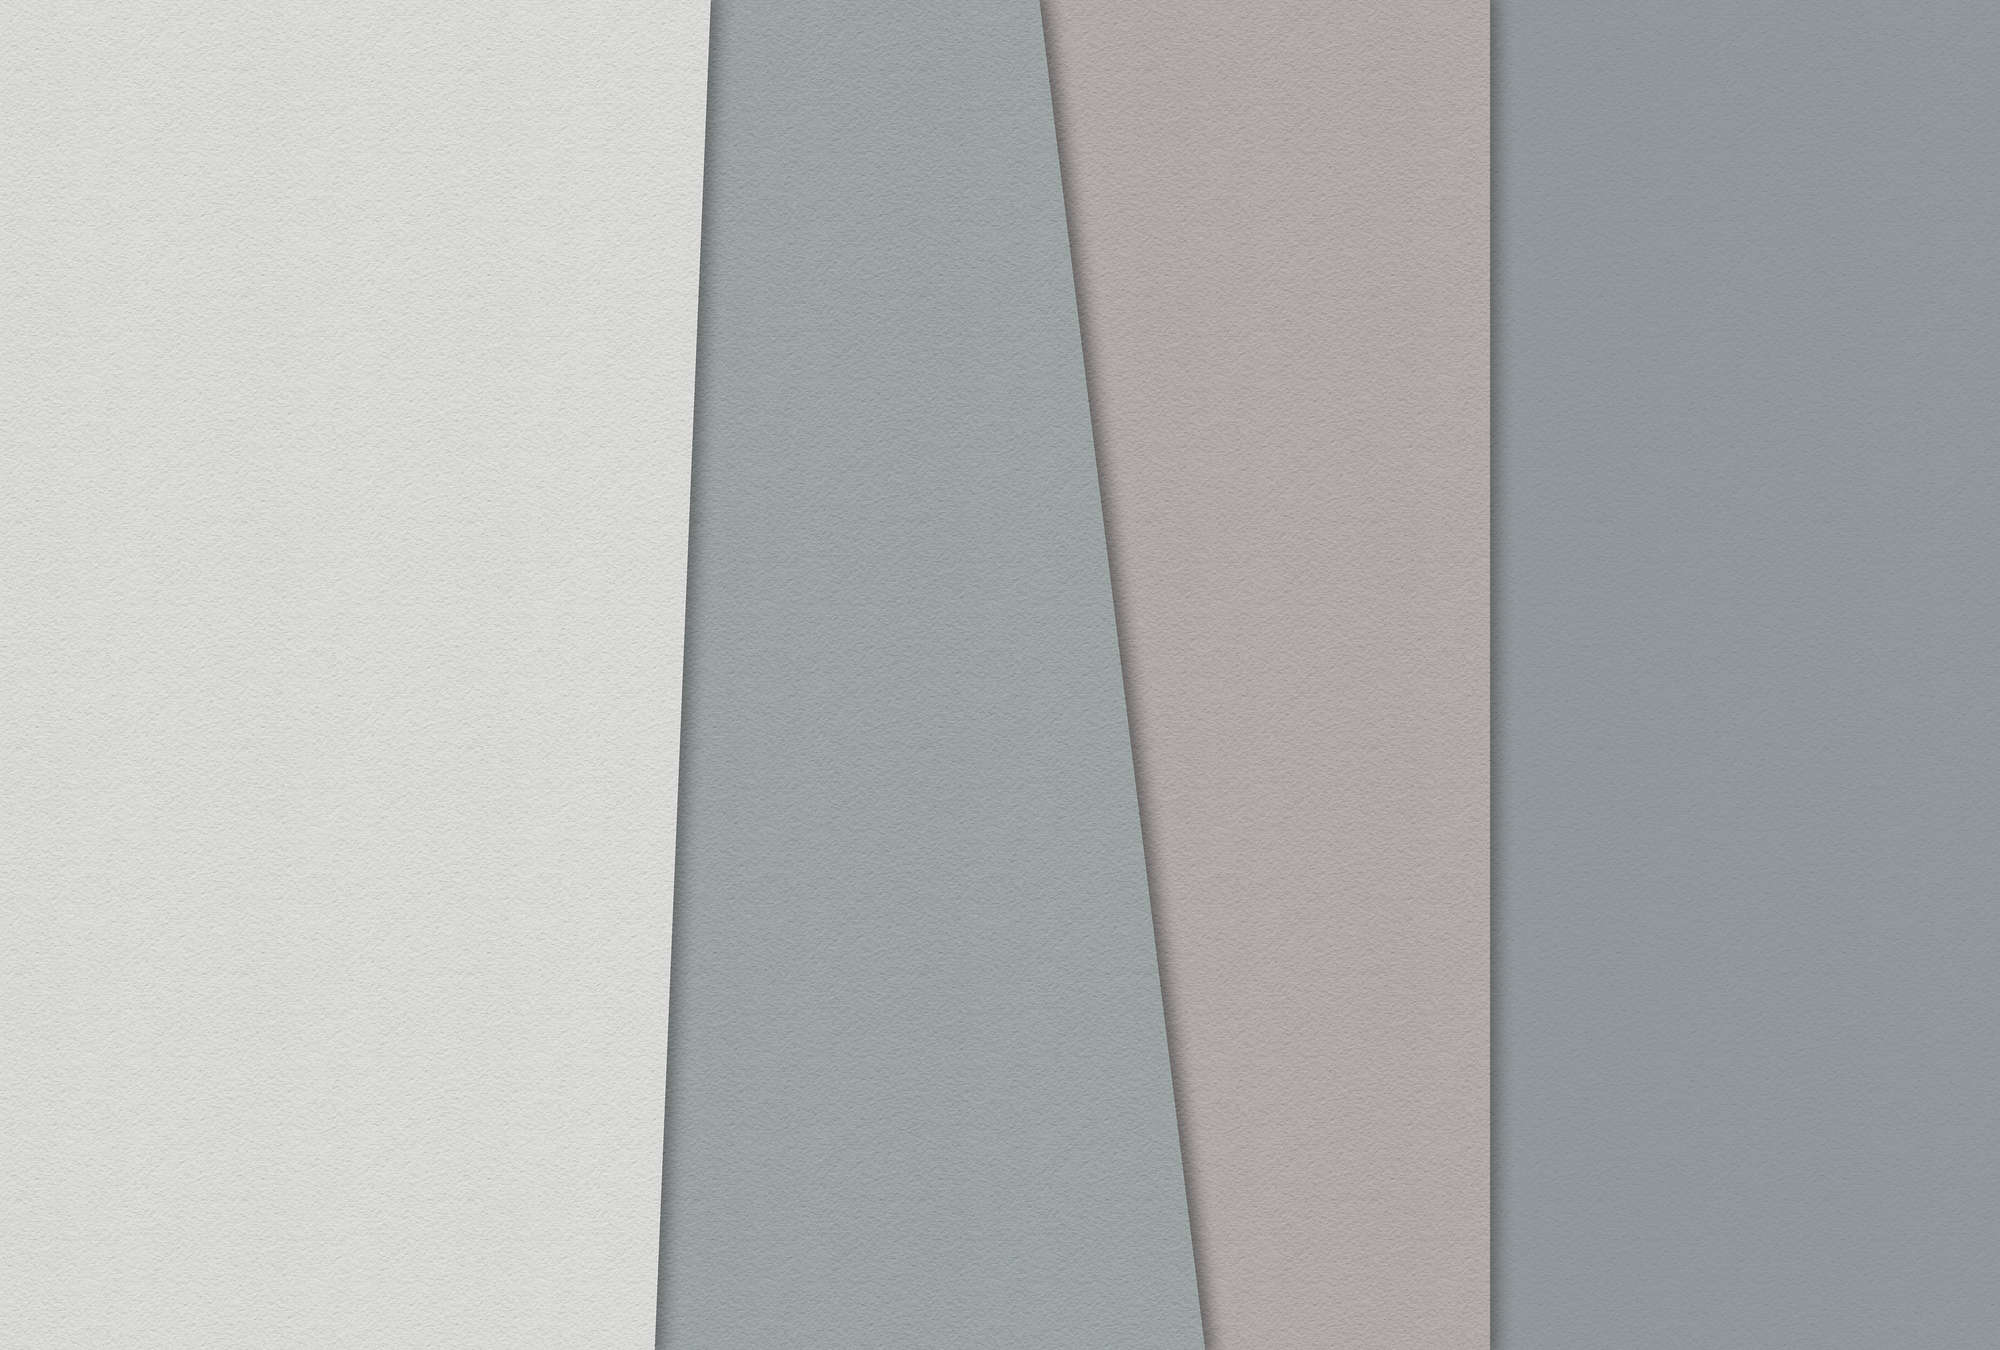             Carta stratificata 1 - Carta da parati grafica con aree colorate in una struttura di carta fatta a mano - Blu, Crema | Vello liscio premium
        